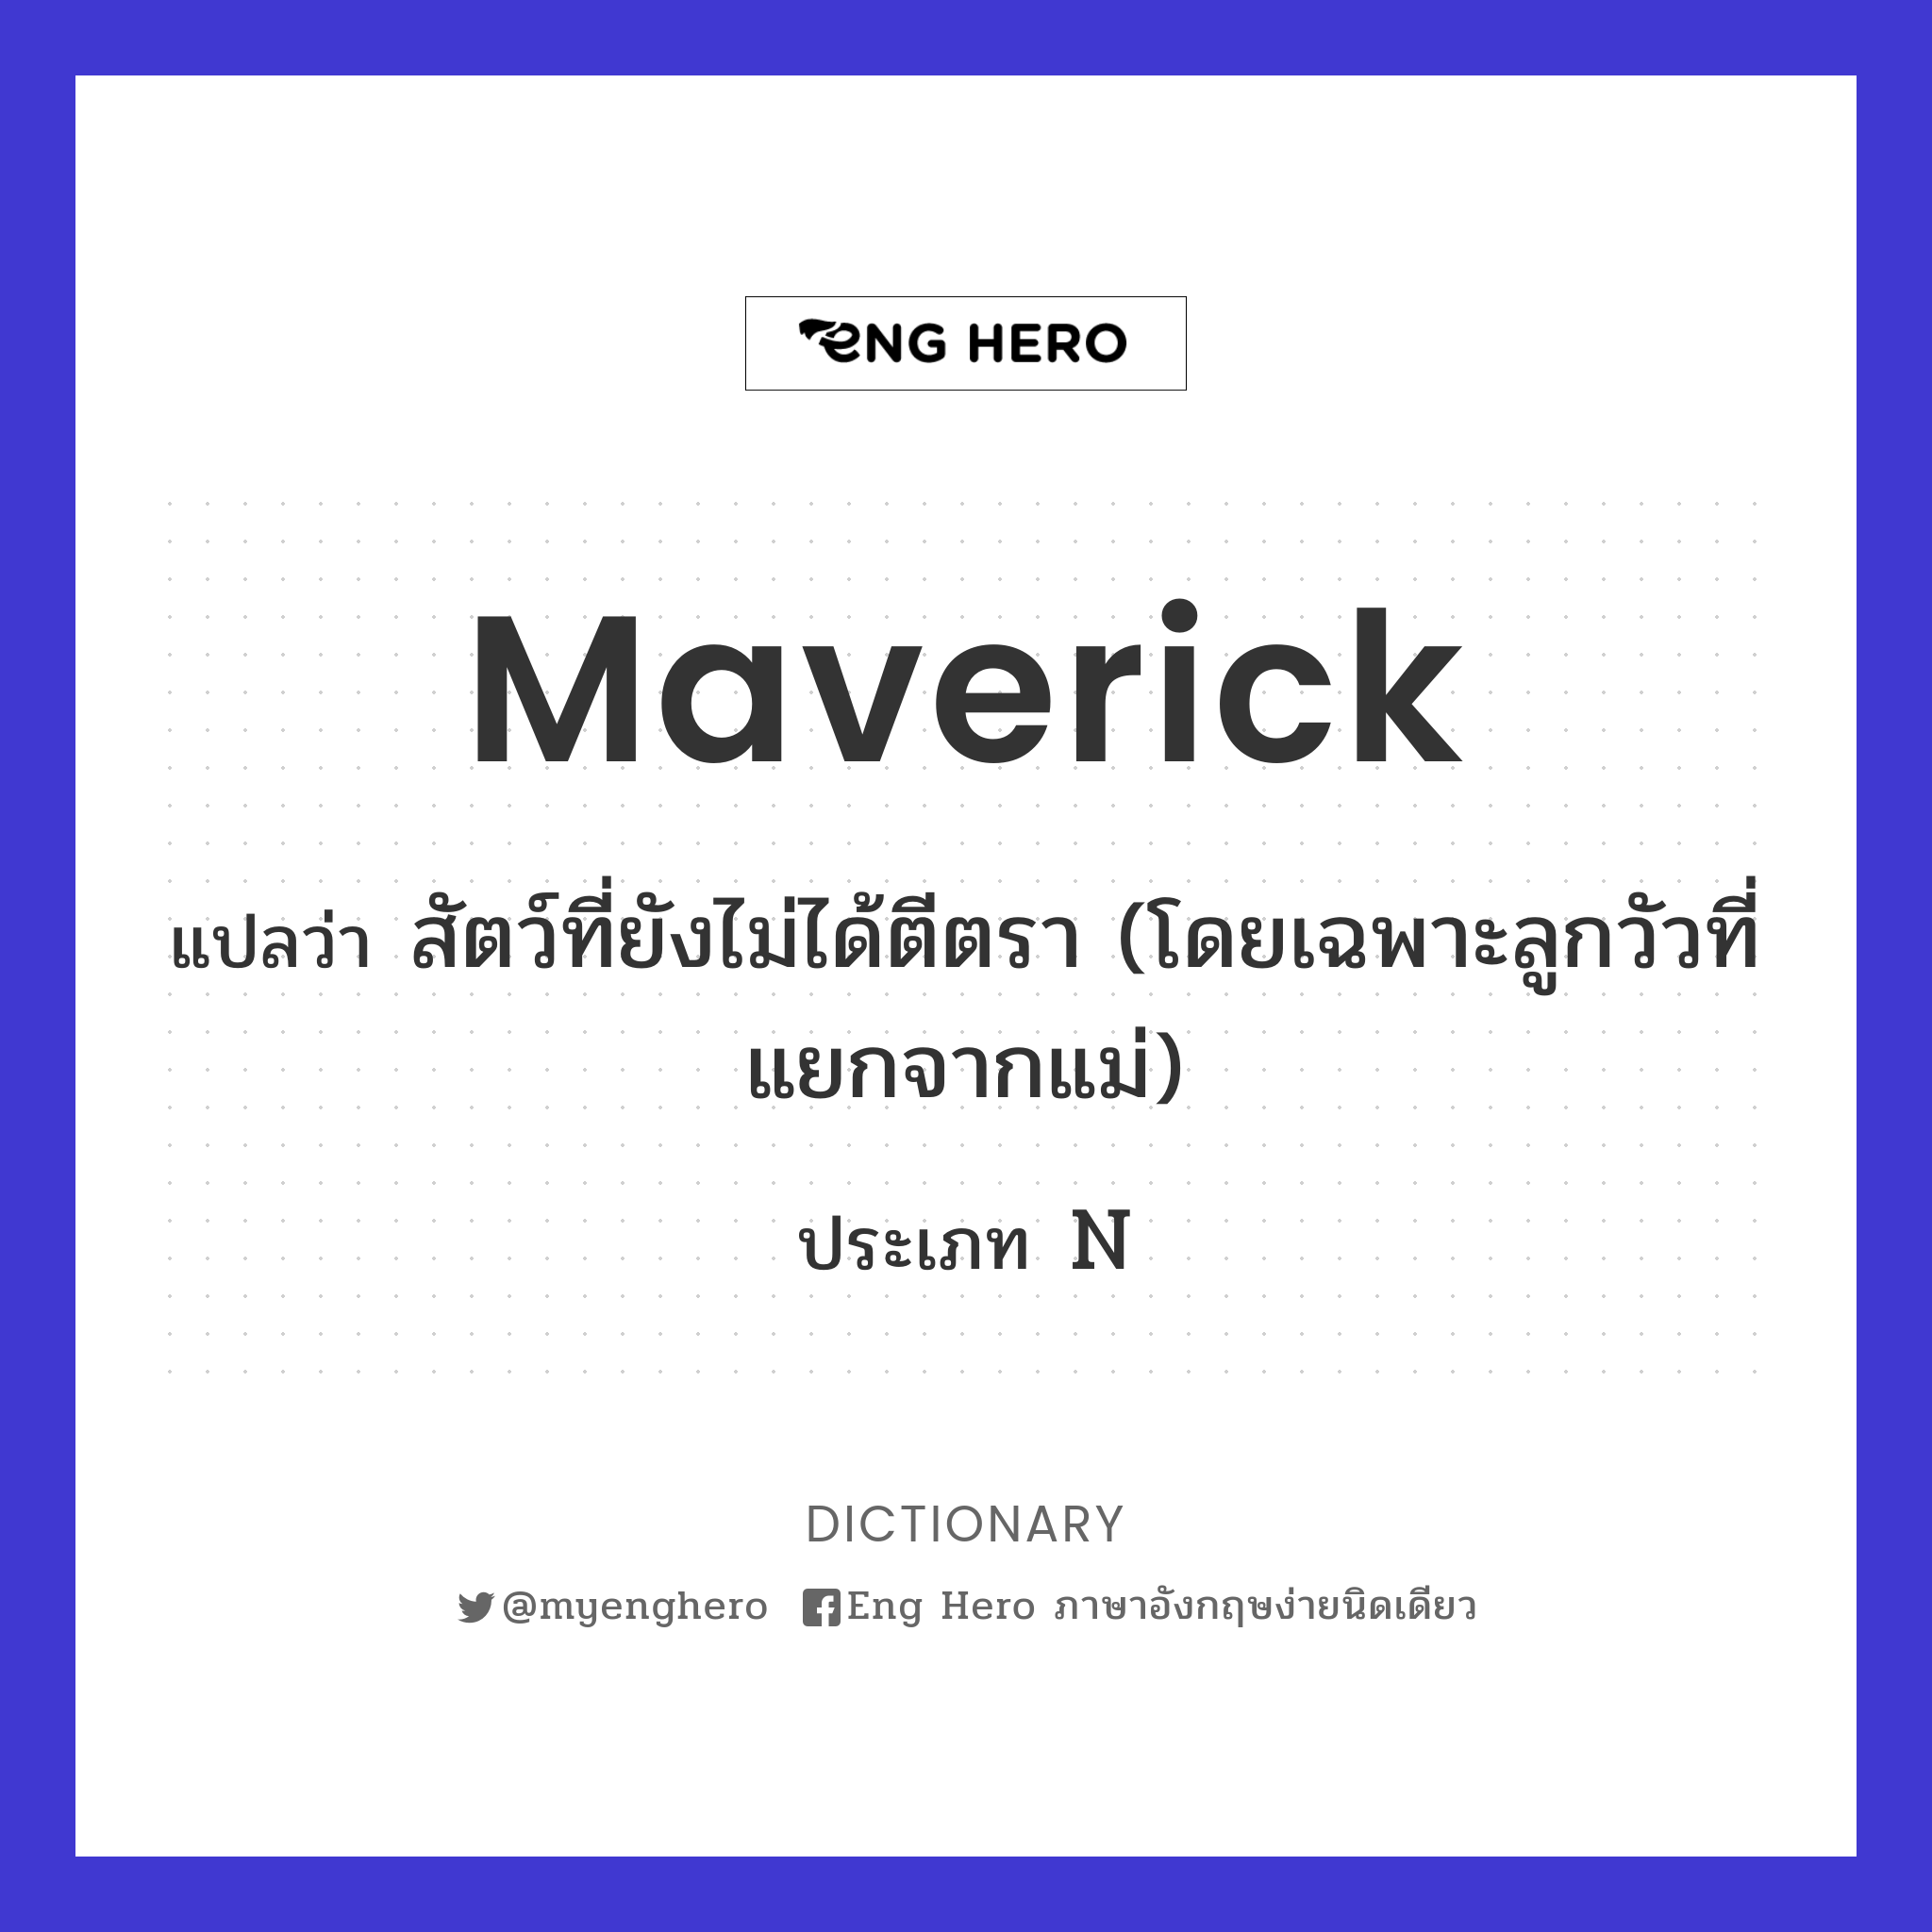 maverick